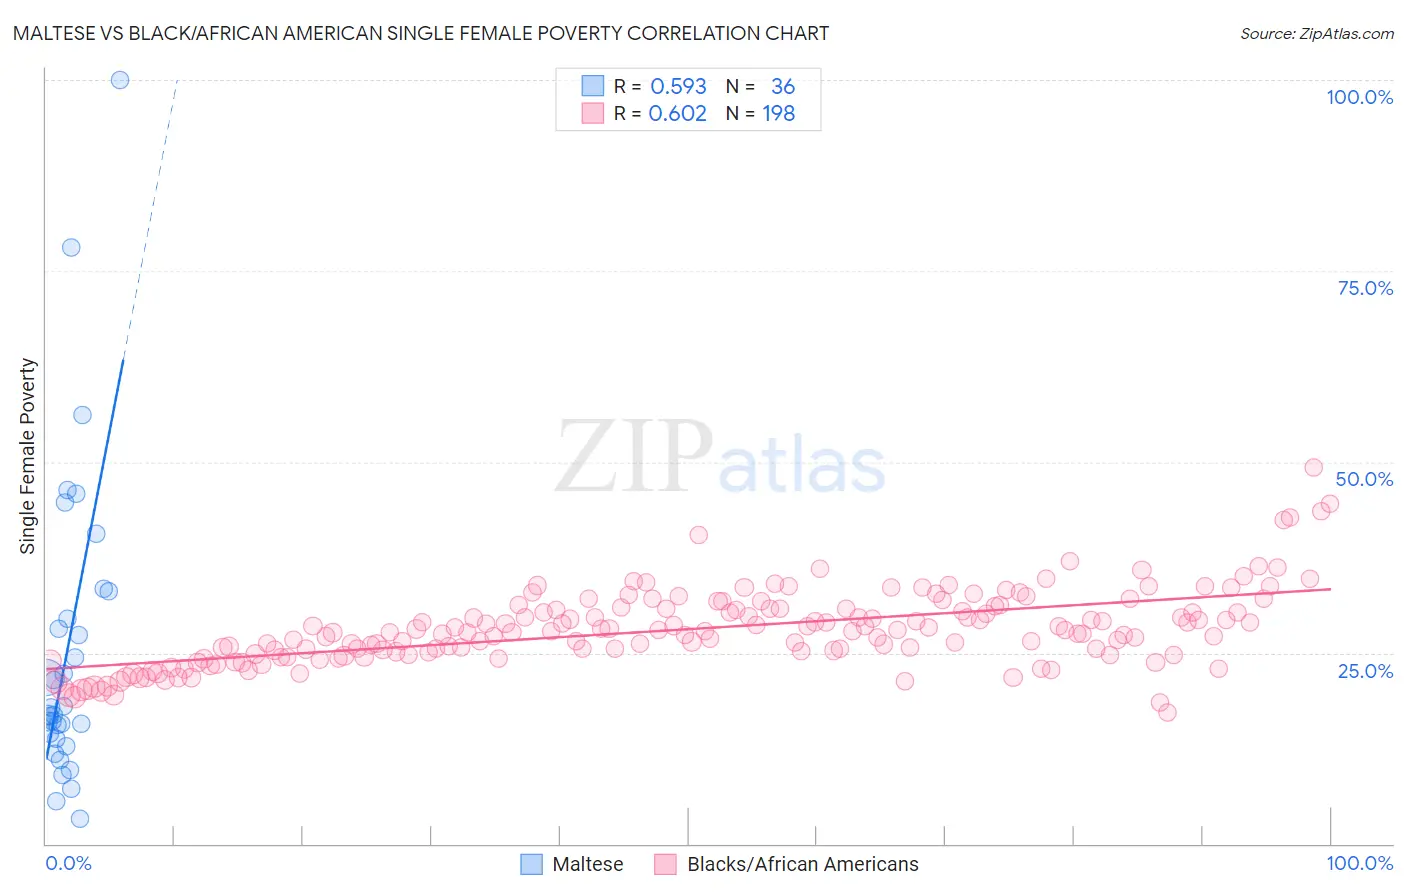 Maltese vs Black/African American Single Female Poverty